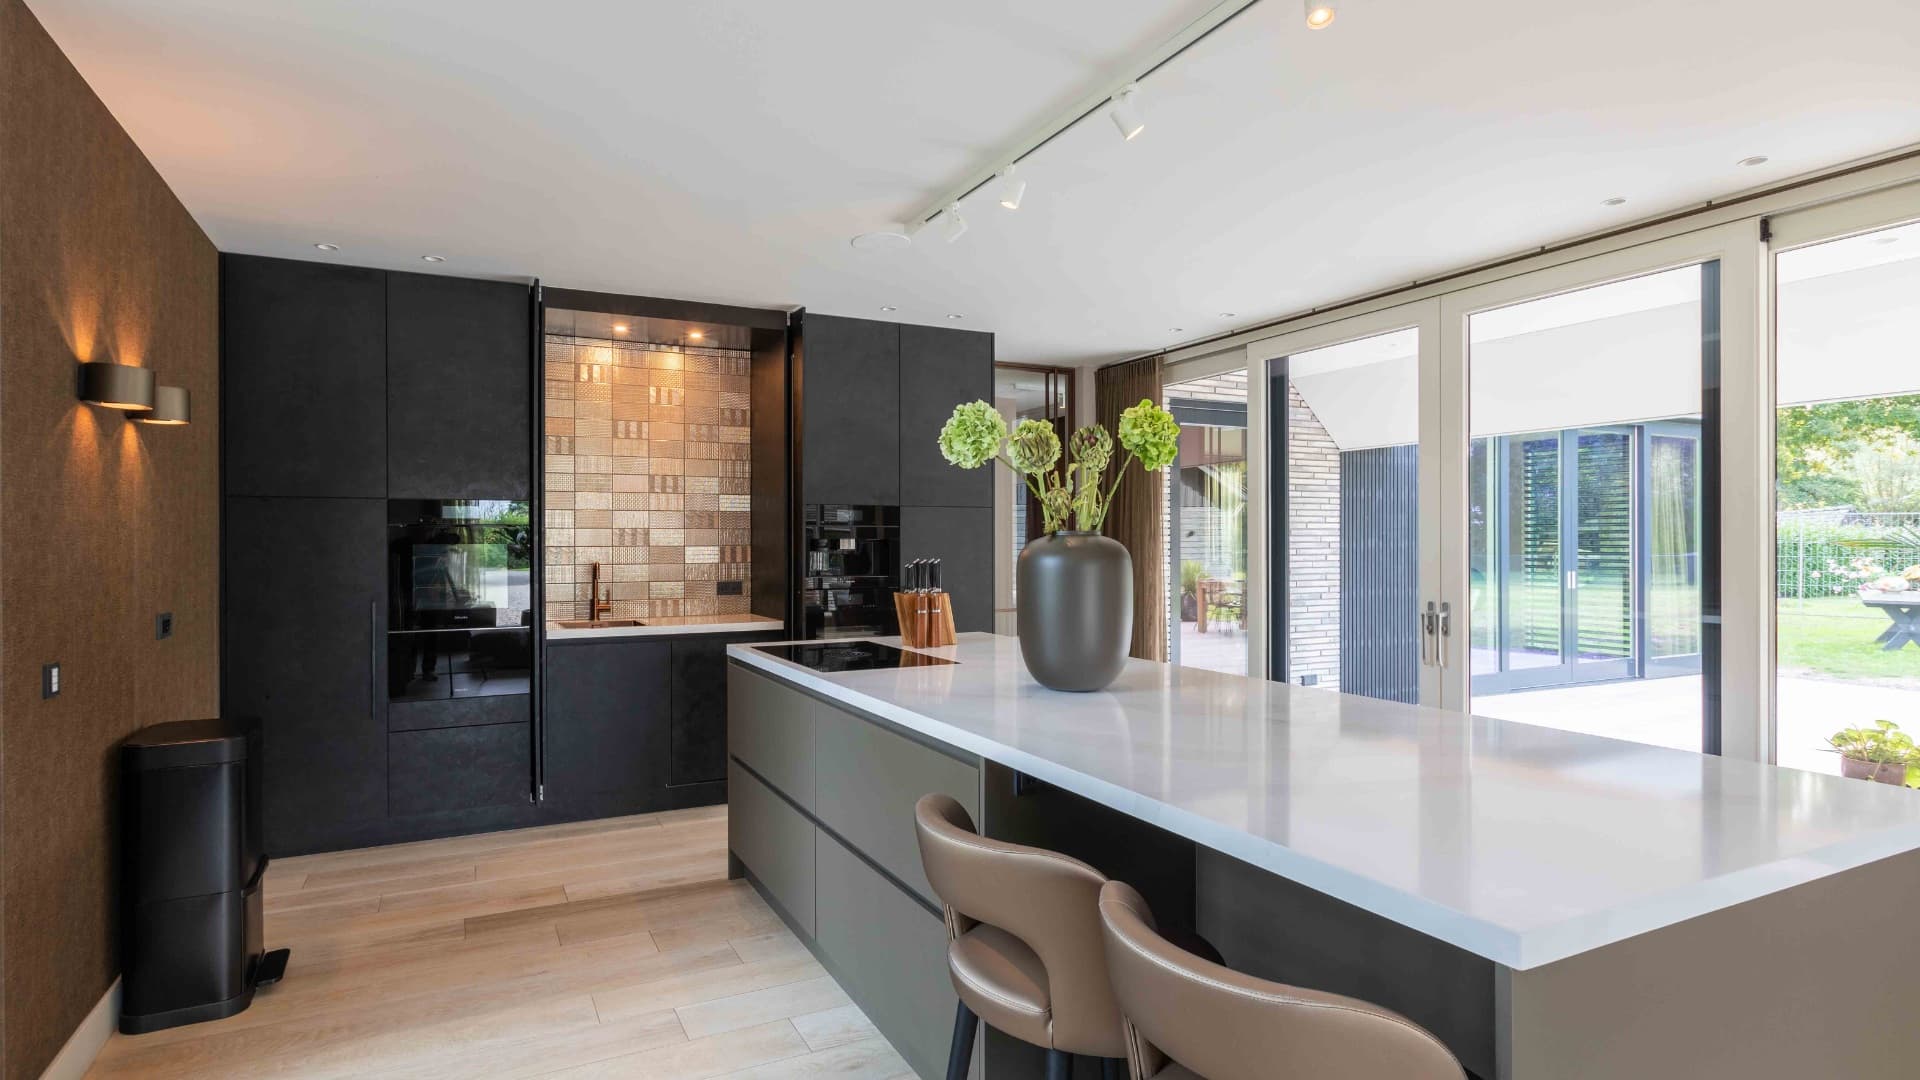 Bezoek de Van Ginkel keukens showroom in Barneveld voor meer inspiratie en vindt uw luxe keuken op maat